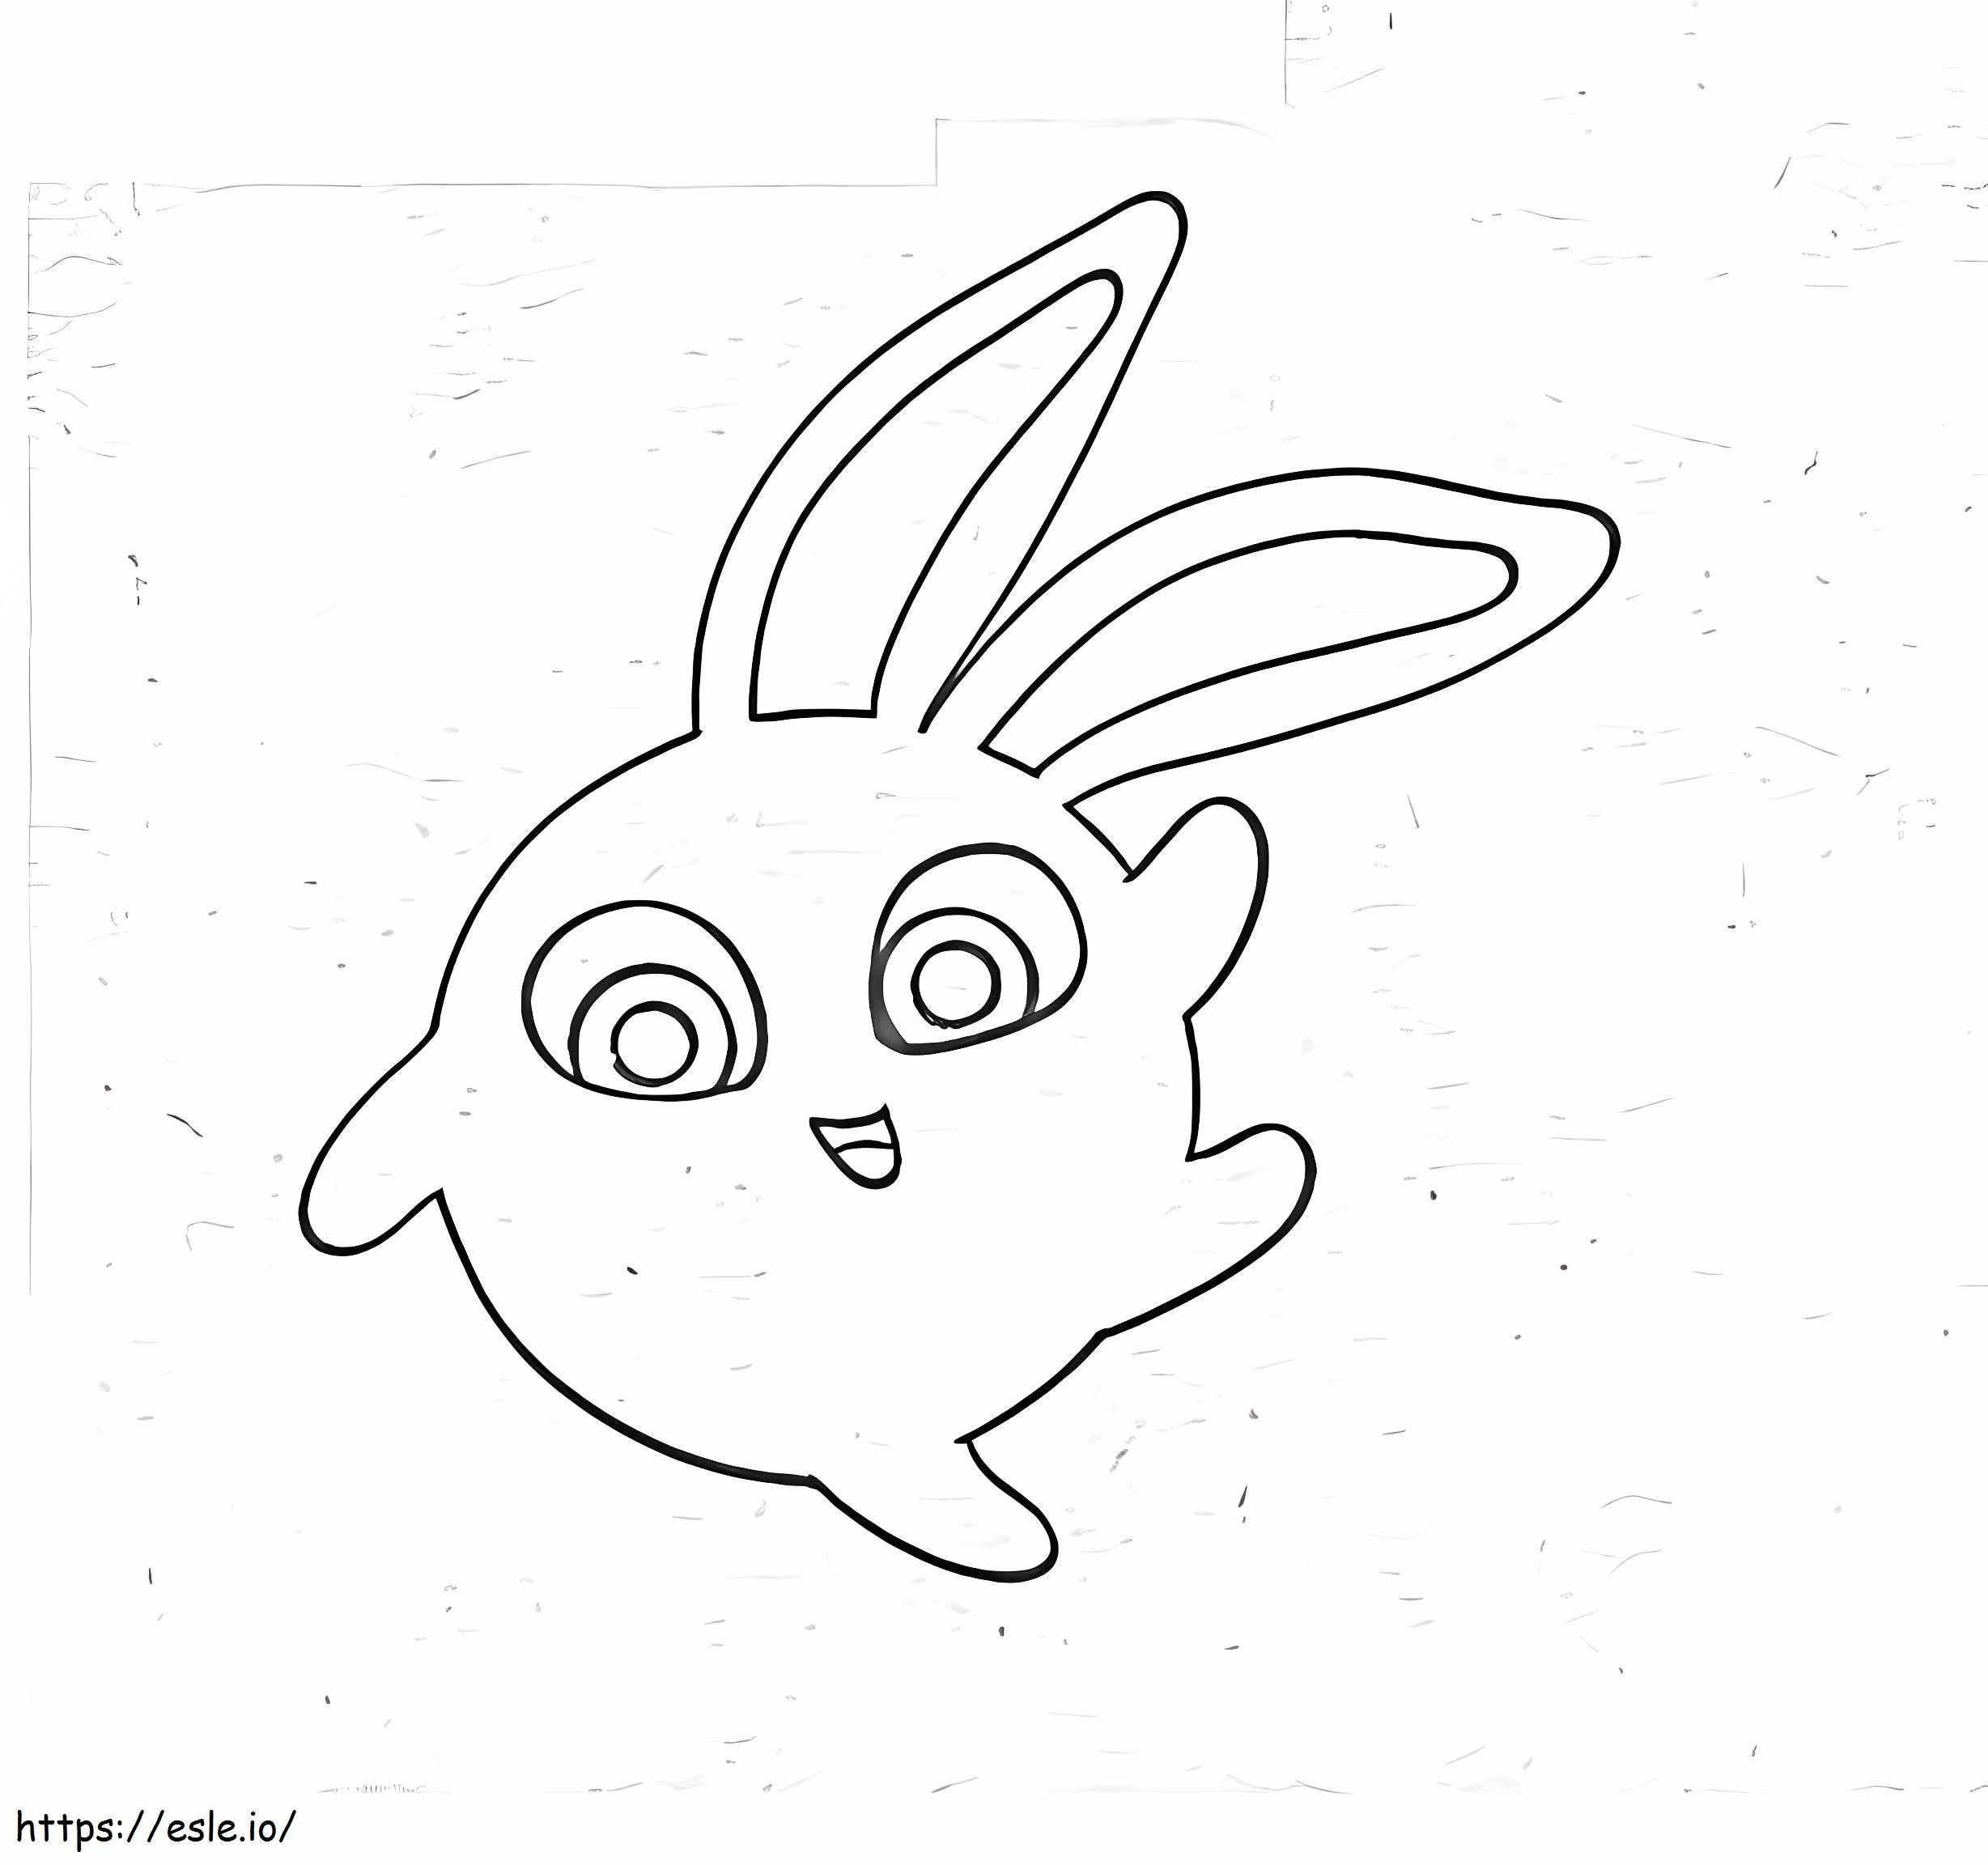 Coelhinhos ensolarados de Hopper para colorir